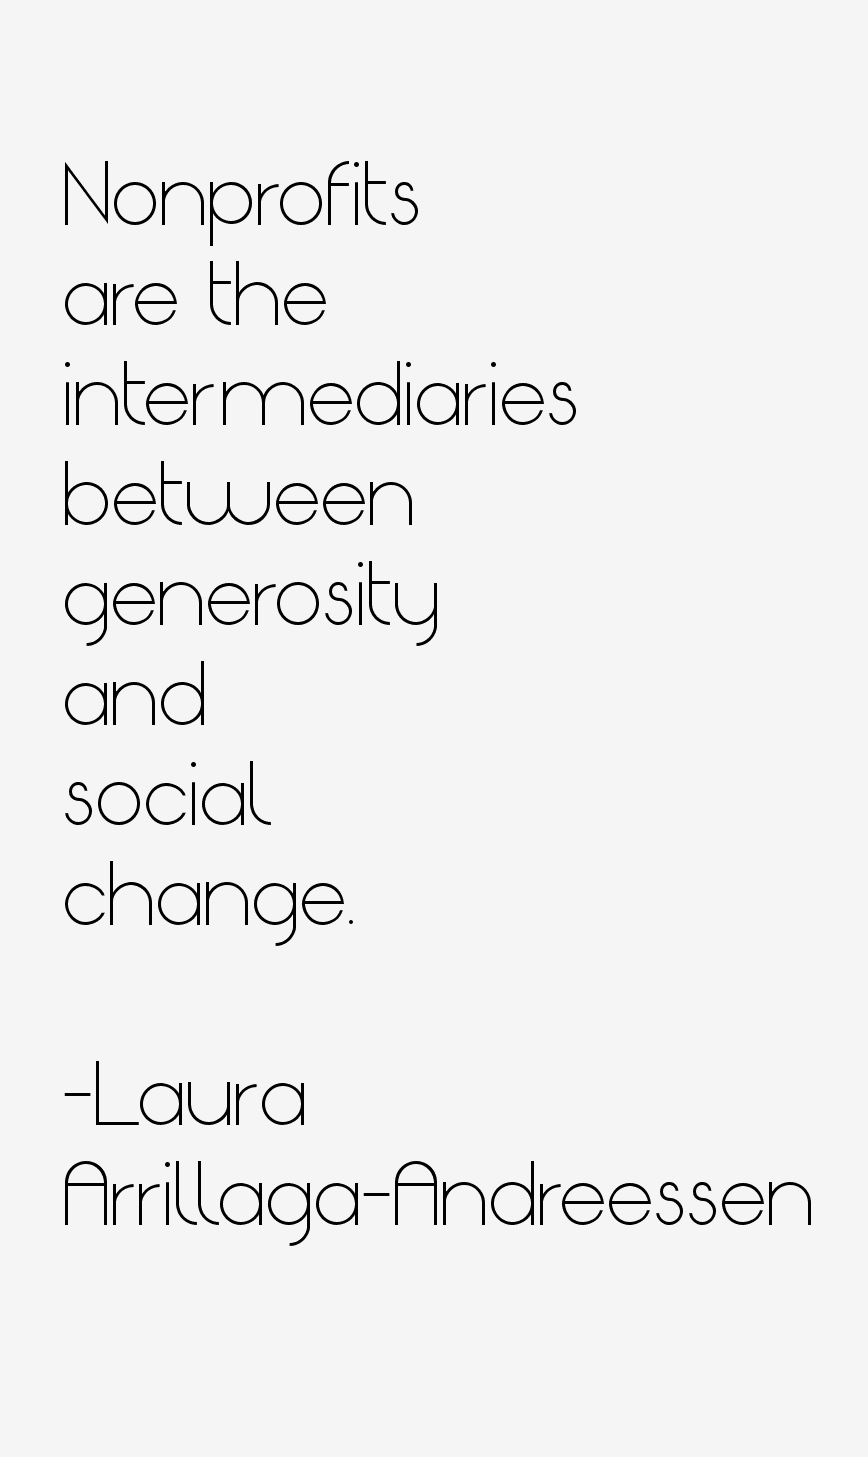 Laura Arrillaga-Andreessen Quotes